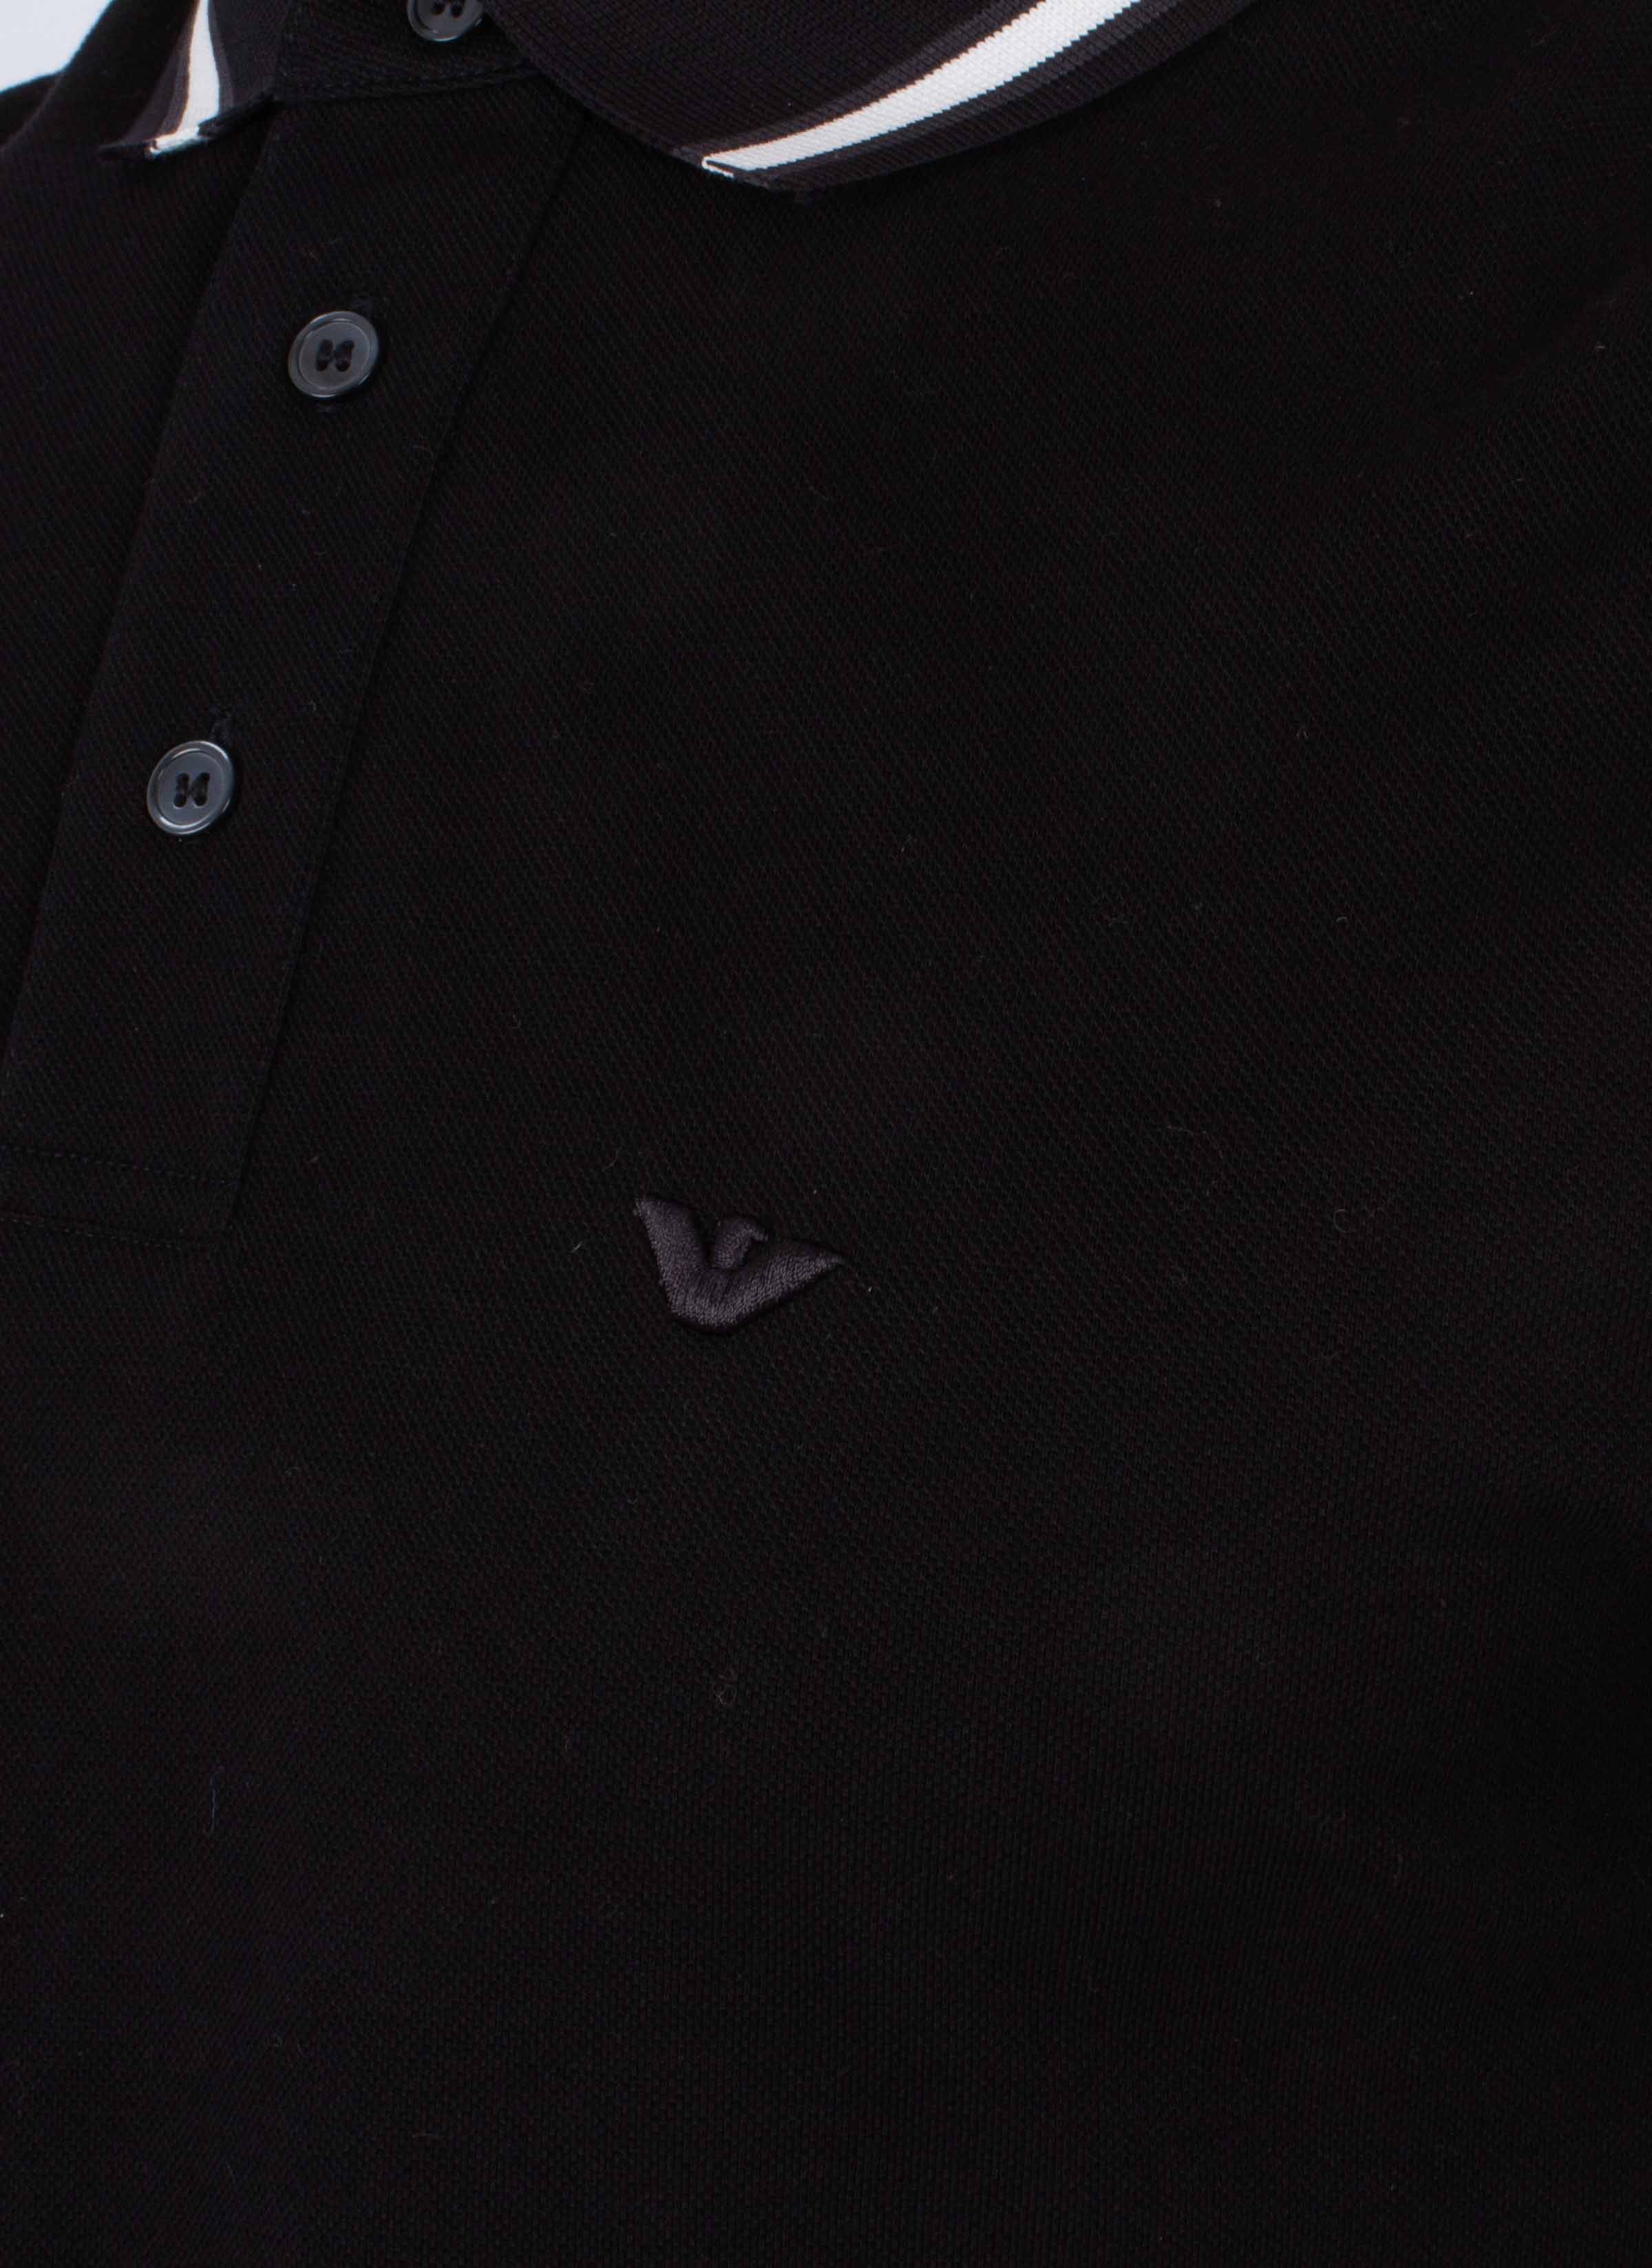 Emporio Armani Polo Black Collar